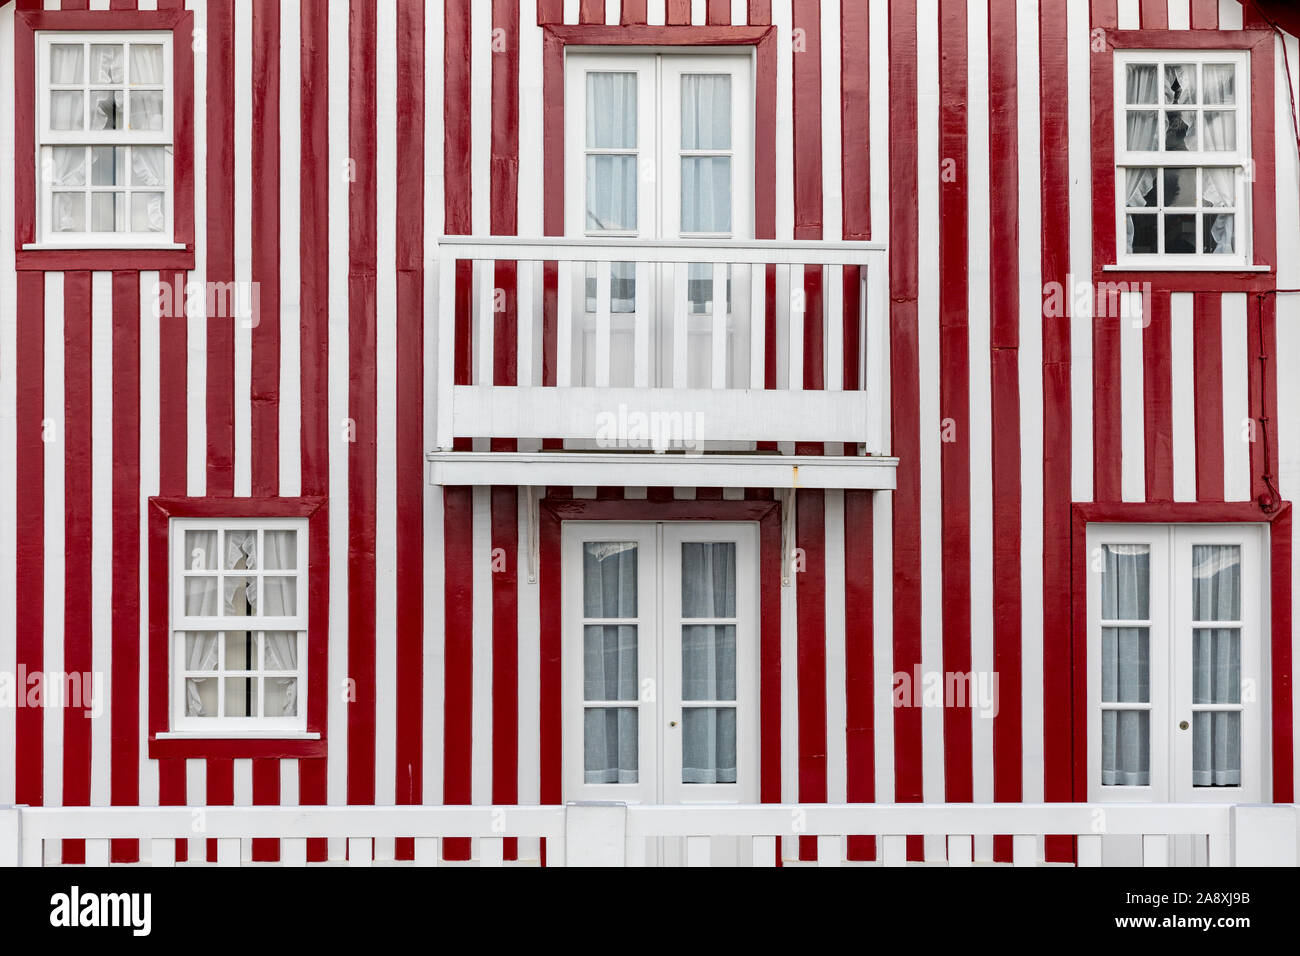 Vitres teintés de "Costa Nova do Prado', le Portugal. Dans Windows typique petite maison en bois avec des rayures colorées au Costa Nova. Aveiro. Le Portugal. Toute information Banque D'Images